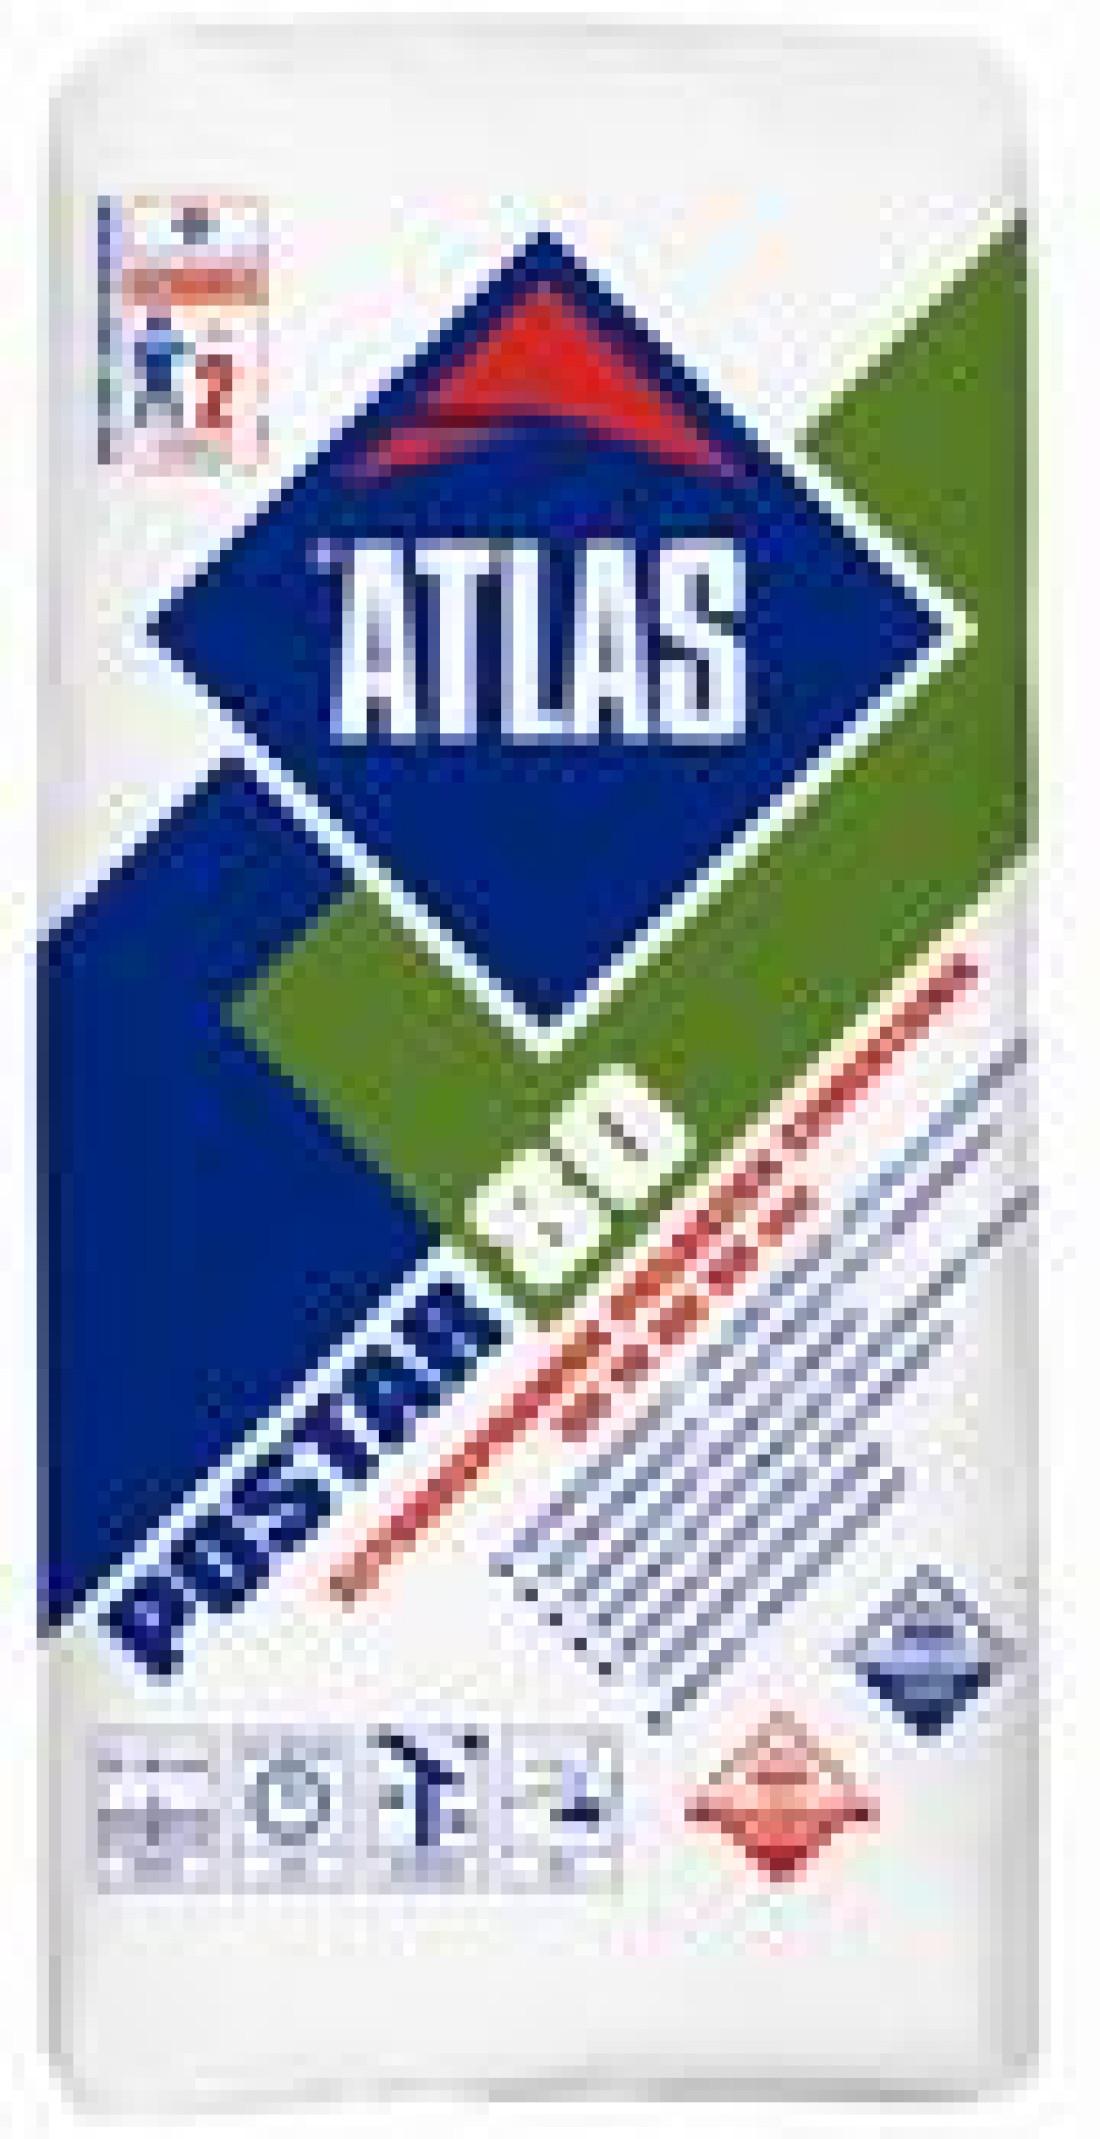 Atlas Postar 80 - szybkosprawna posadzka cementowa